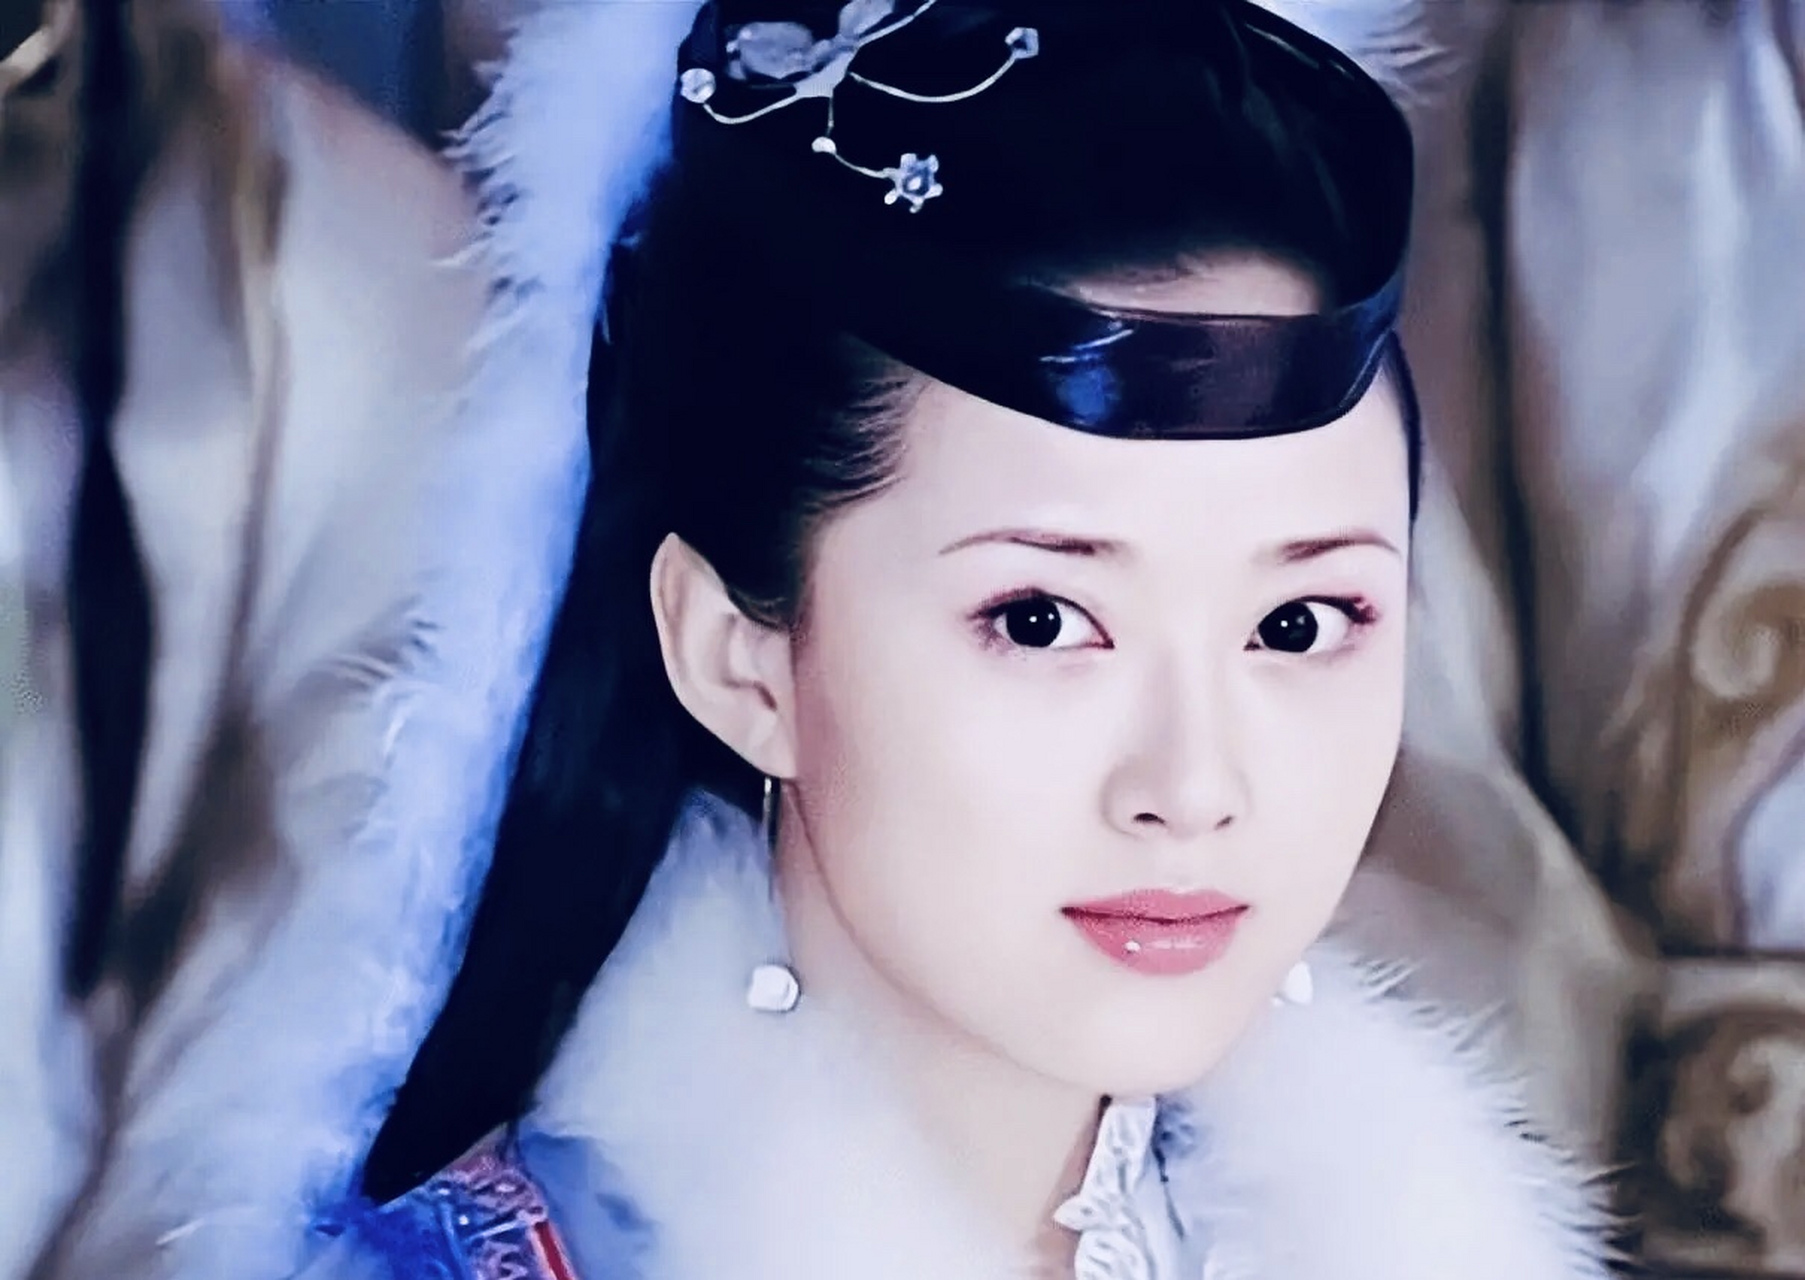 颜丹晨在《宝莲灯》中饰演的嫦娥成为经典角色,但她的演艺事业并不顺